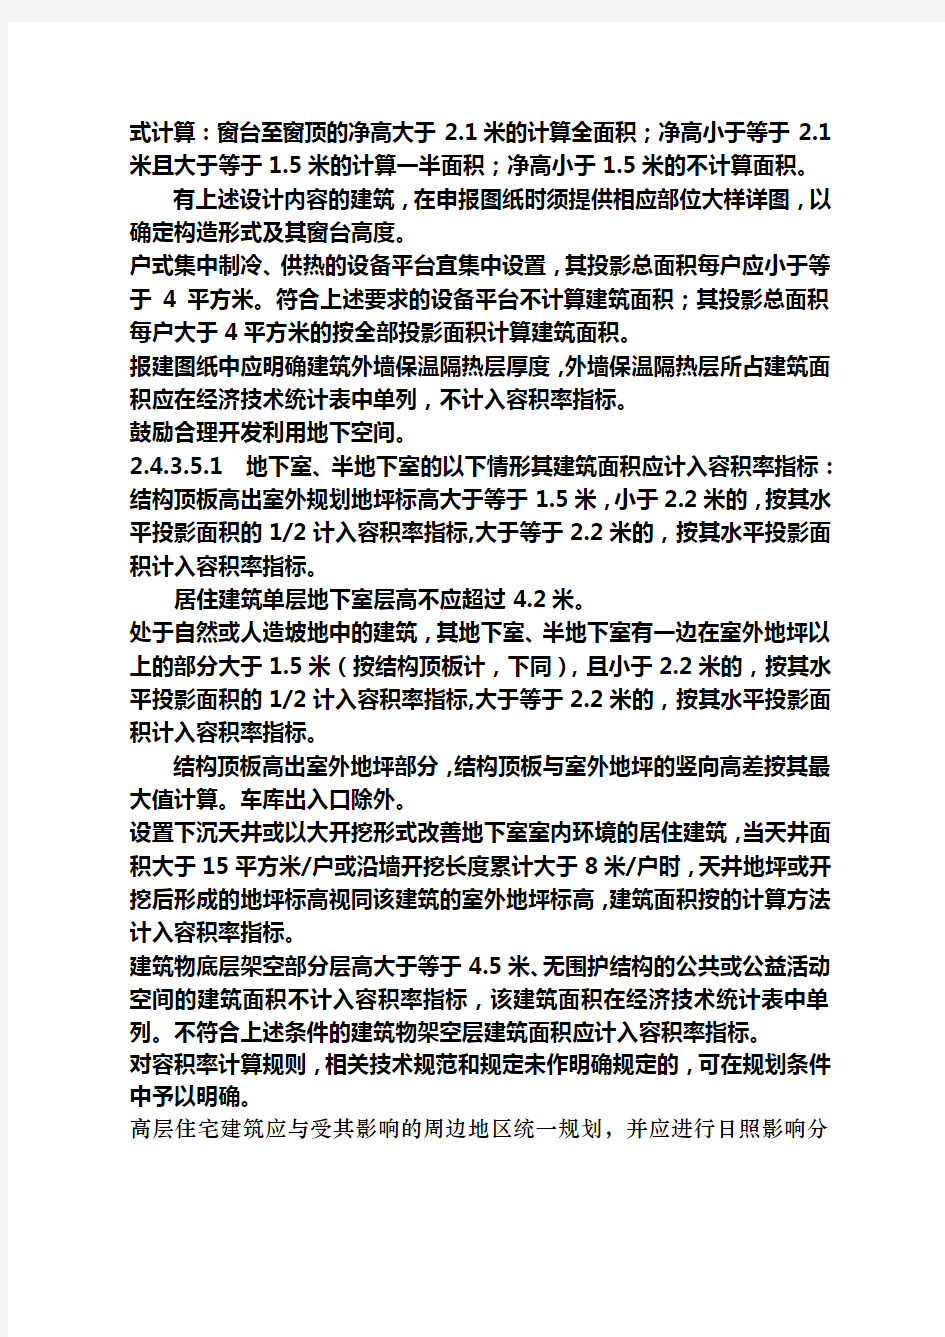 江苏省城市规划管理技术规定(2011年版)